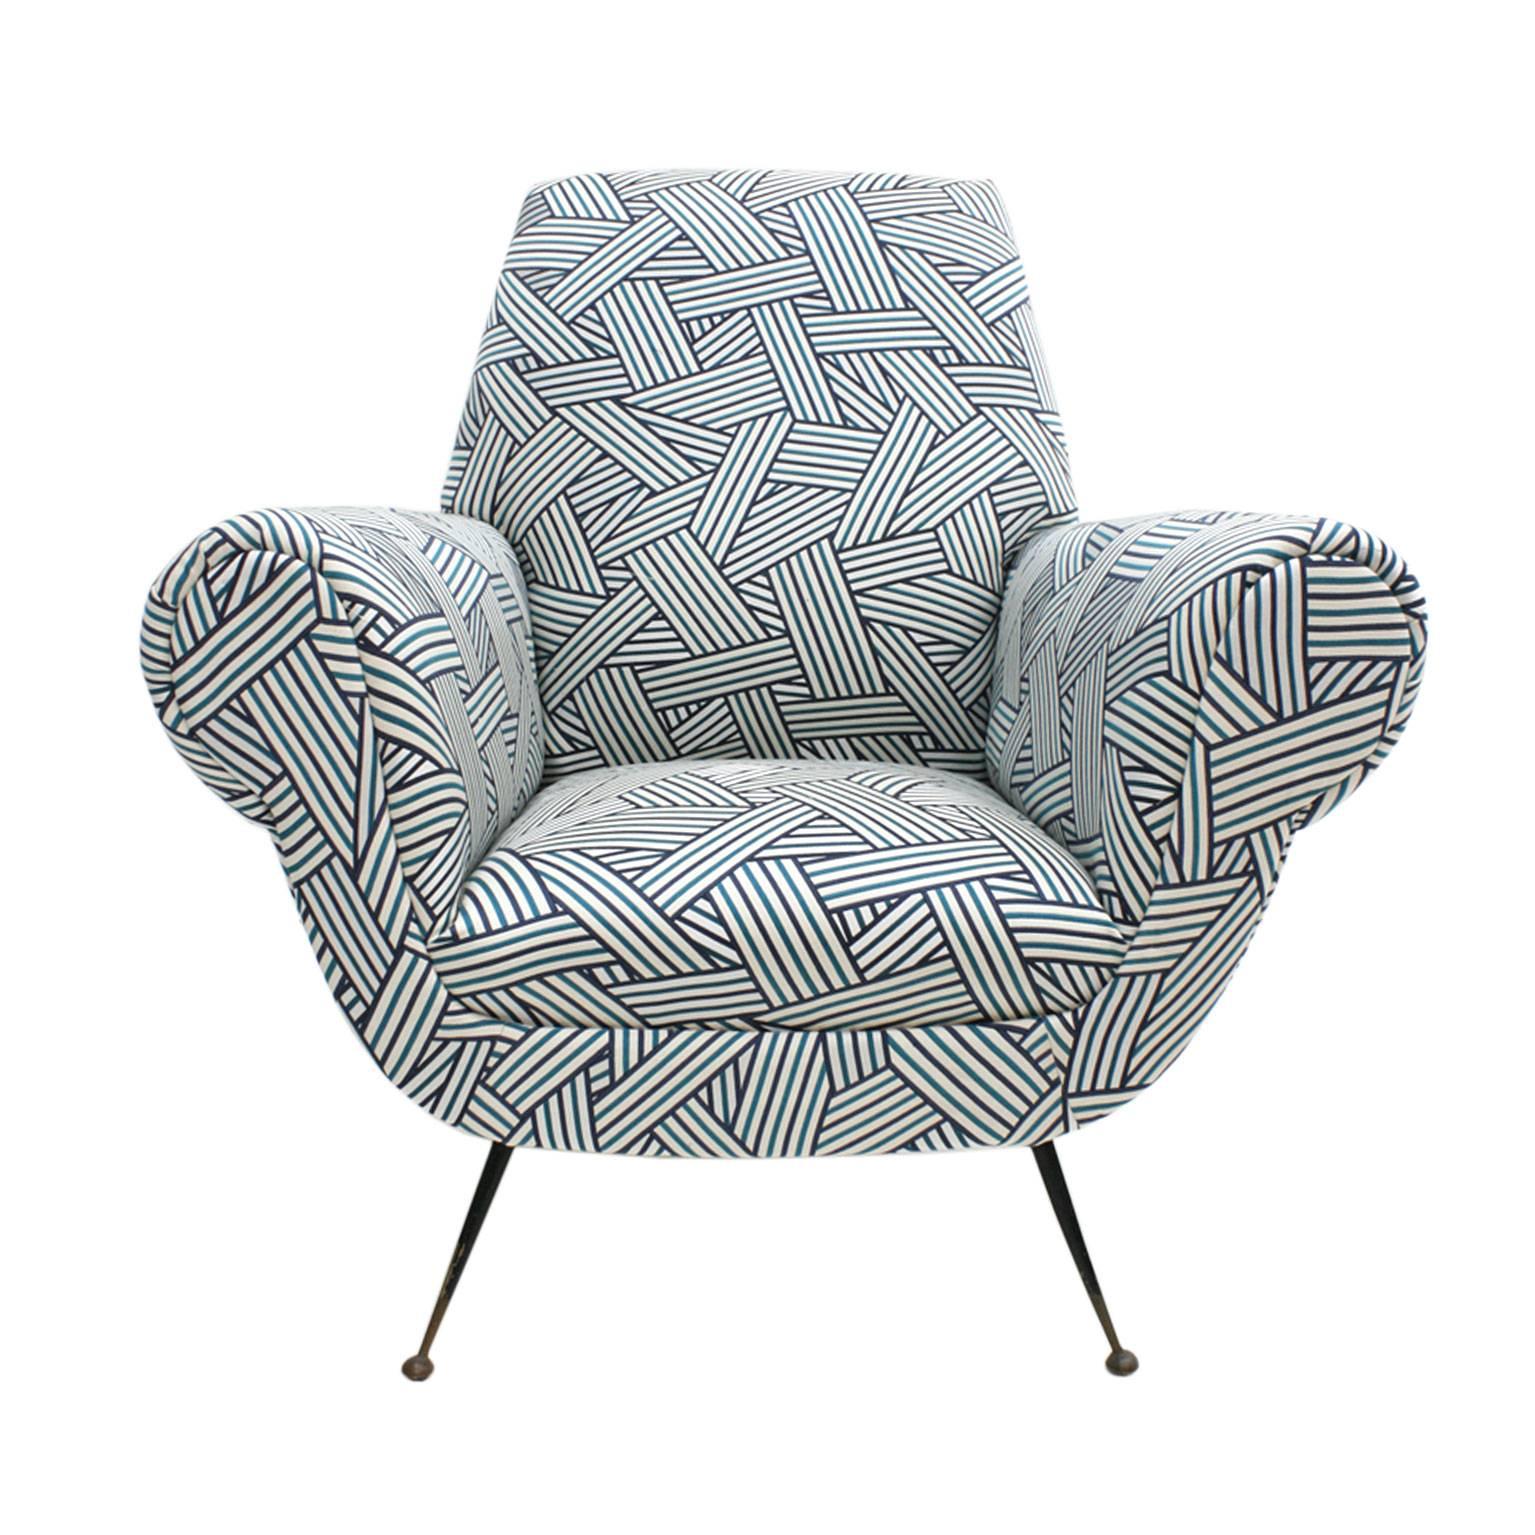 Ein Paar Sessel, entworfen von Gigi Radice für Minotti. Struktur aus Massivholz, neu gepolstert mit Baumwollstoff des Modells 